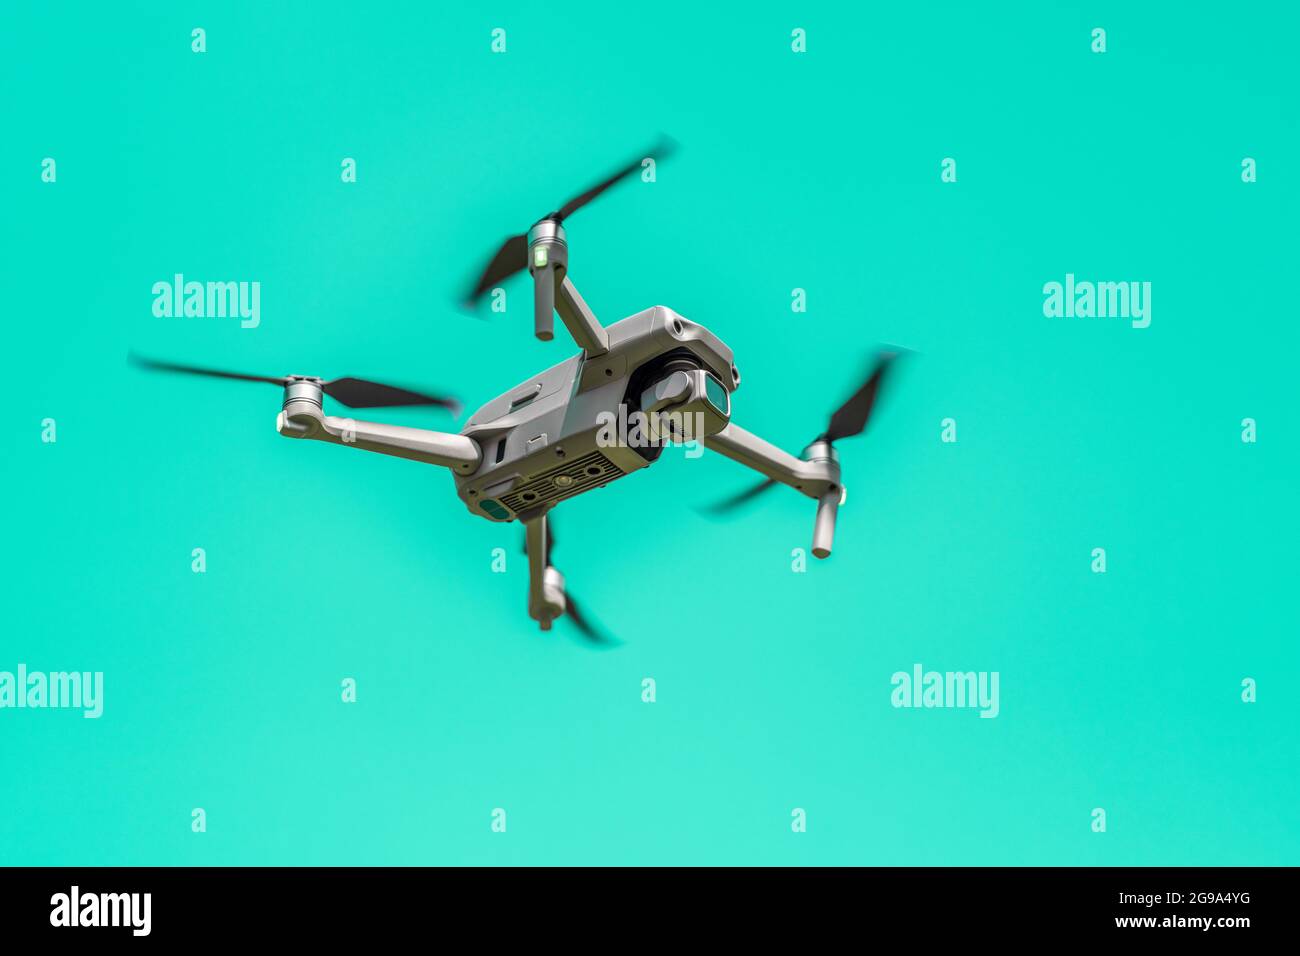 Vuelo con drone con cámara sobre fondo turquesa con espacio de copia. Cuadruplicador aerotransportado. También conocido como un avión no tripulado o UAV. Ángulo bajo Foto de stock